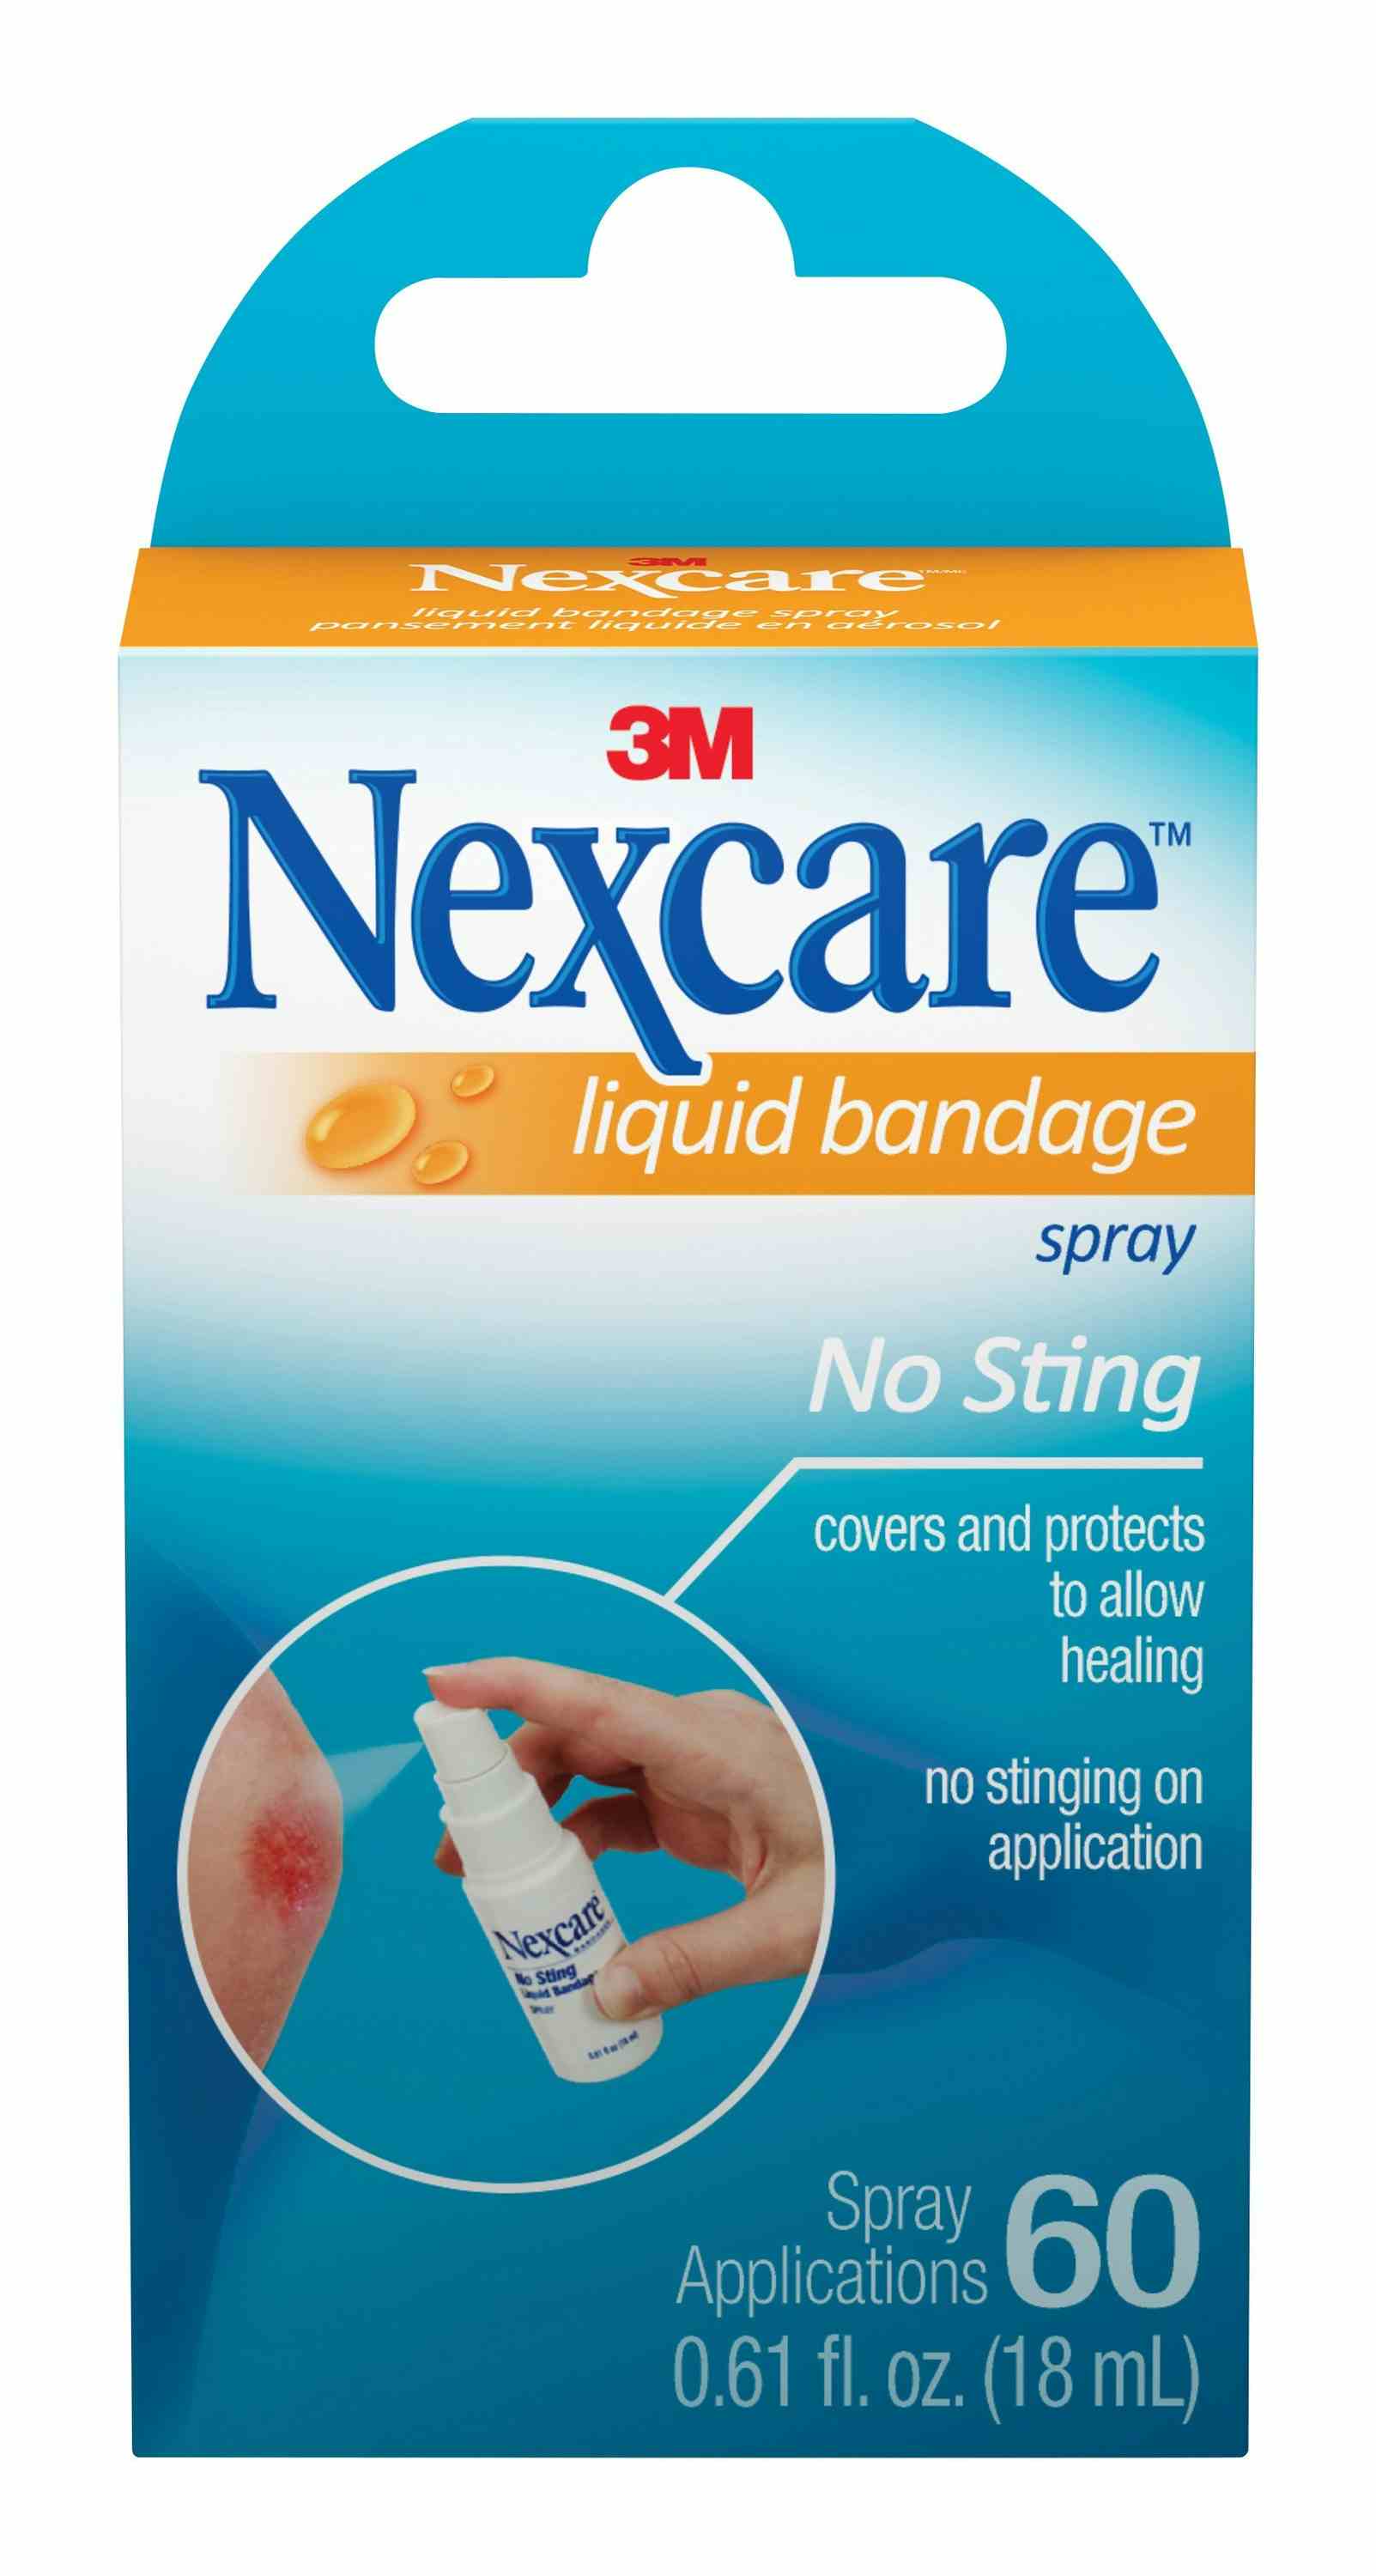 3M Nexcare Liquid Bandage, 05113186293, 1 Each